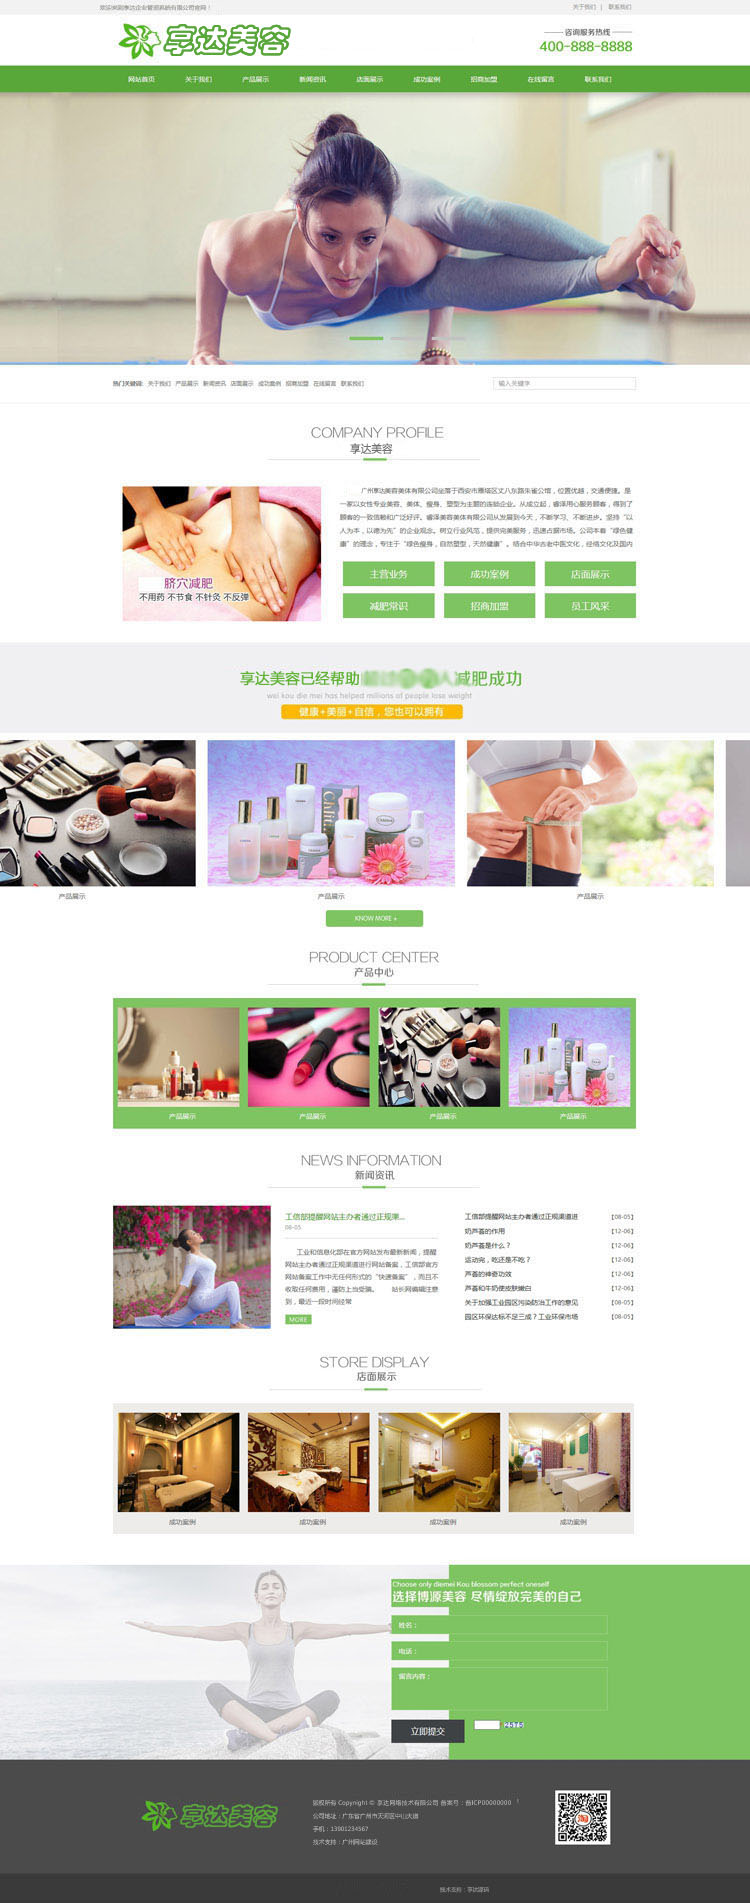 海南企业网站建设 | 美体美容连锁机构网站设计